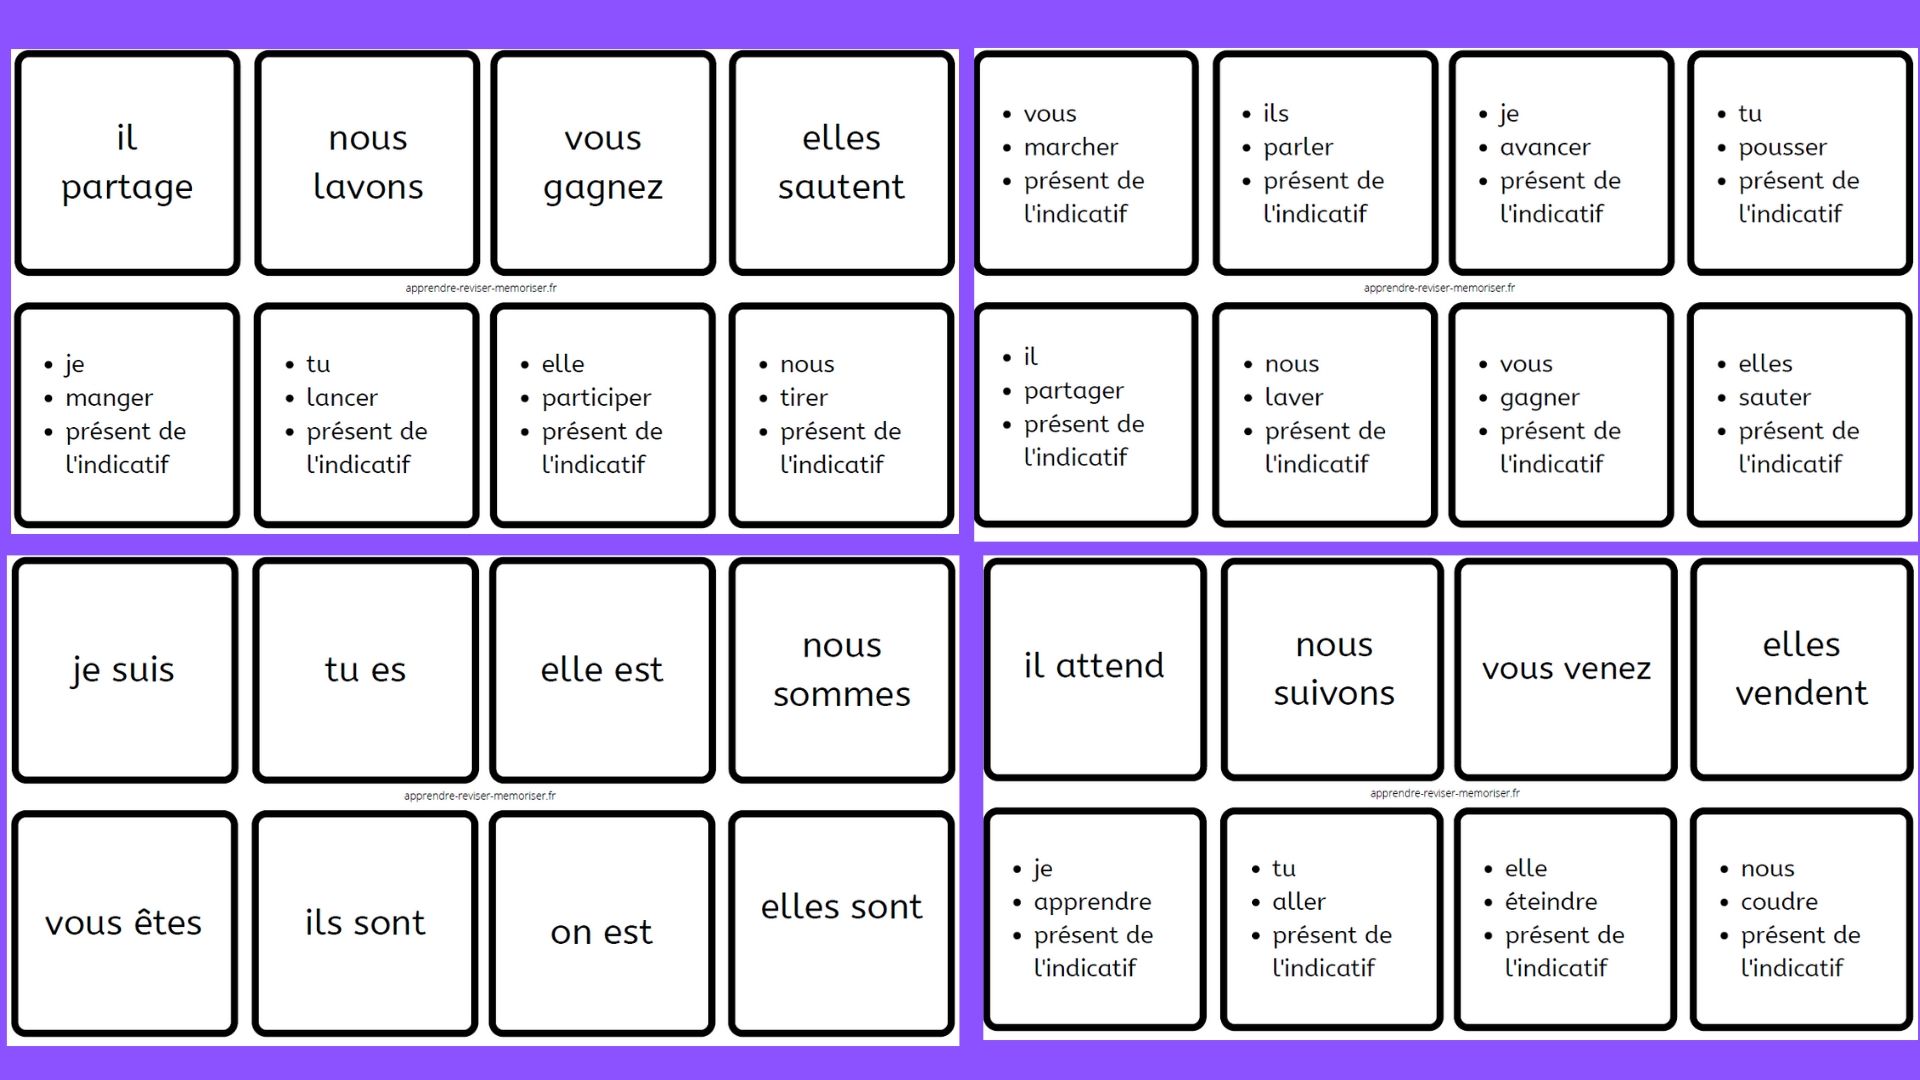 Dominos de conjugaison du présent de l'indicatif (3 groupes + auxiliaires)  - Apprendre, réviser, mémoriser